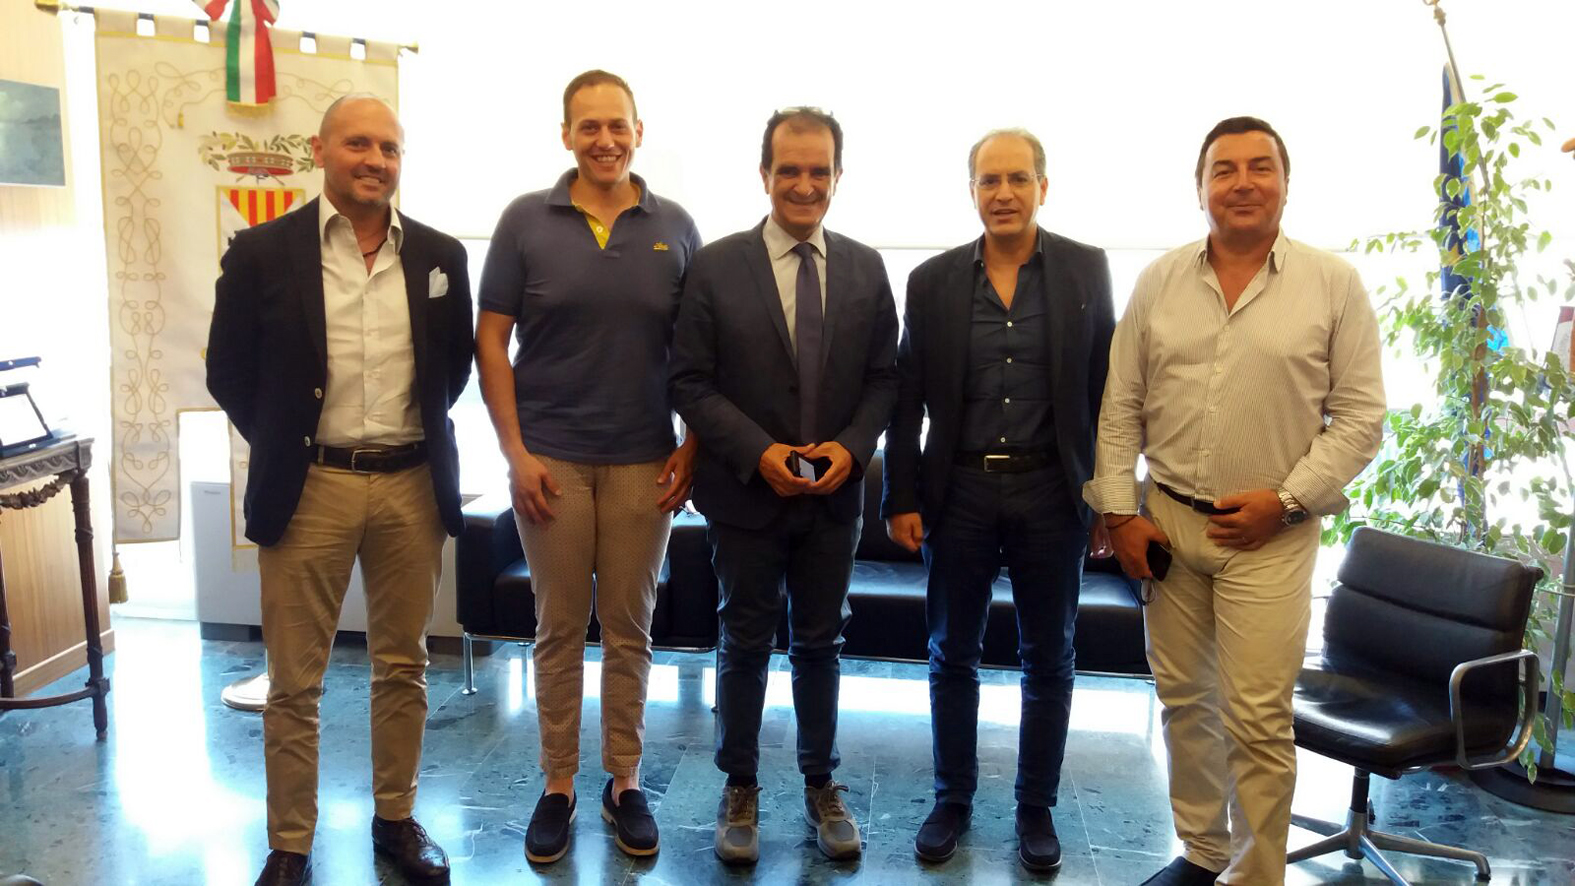 Da sinistra nella foto: Scaramuzzino, Ruberto, Bruno, Mascaro e Battaglia